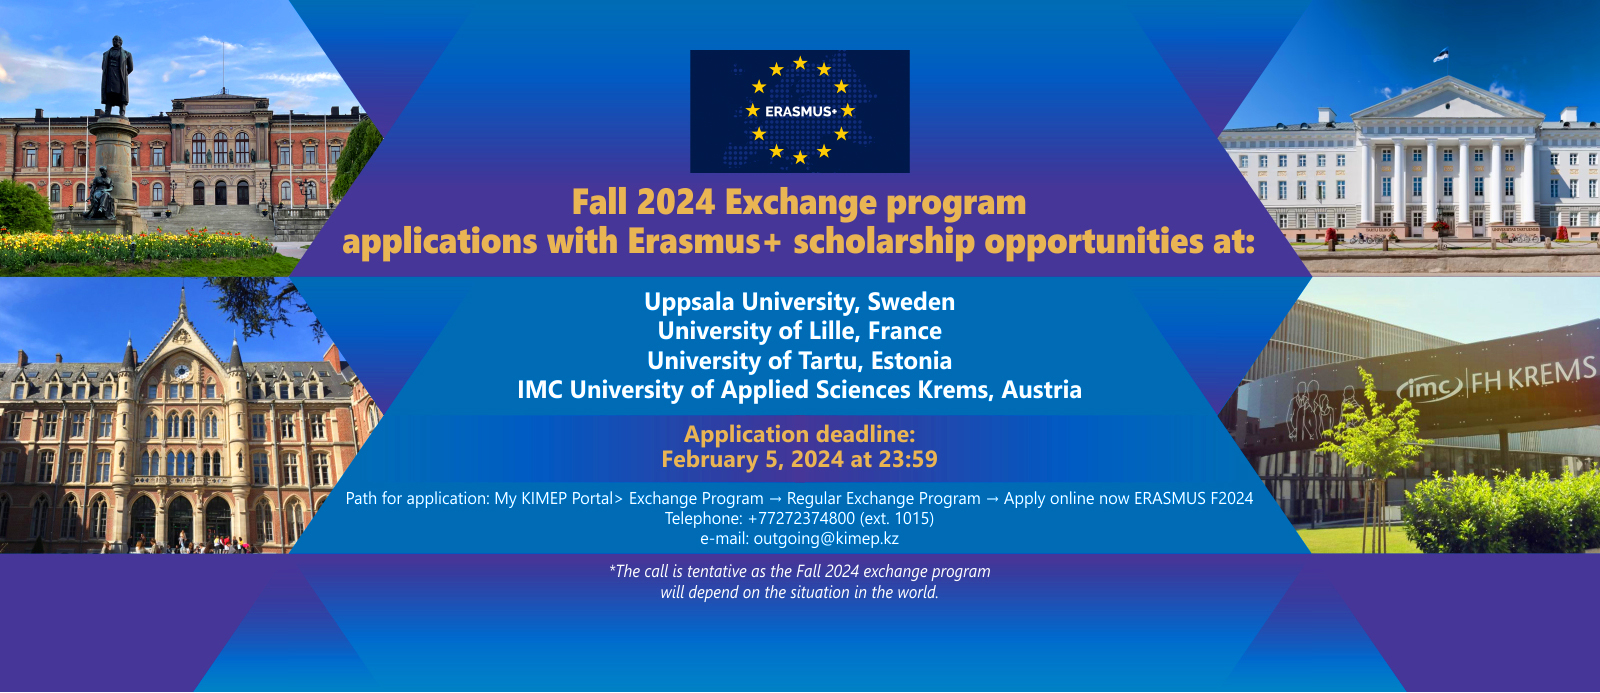 Slider for Erasmus Fall 2024